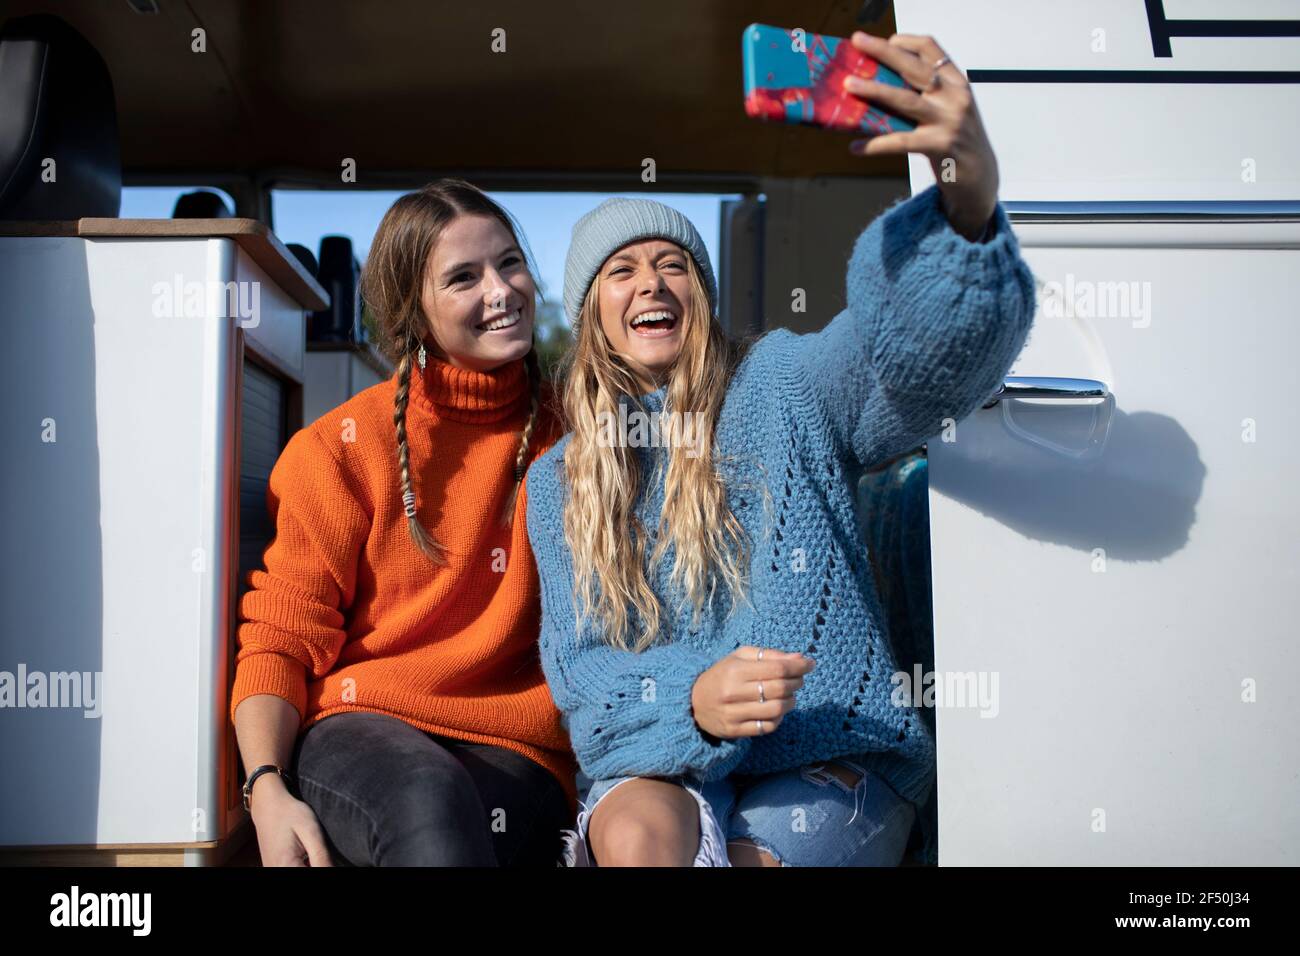 Happy young women friends taking selfie in sunny camper van doorway Stock Photo